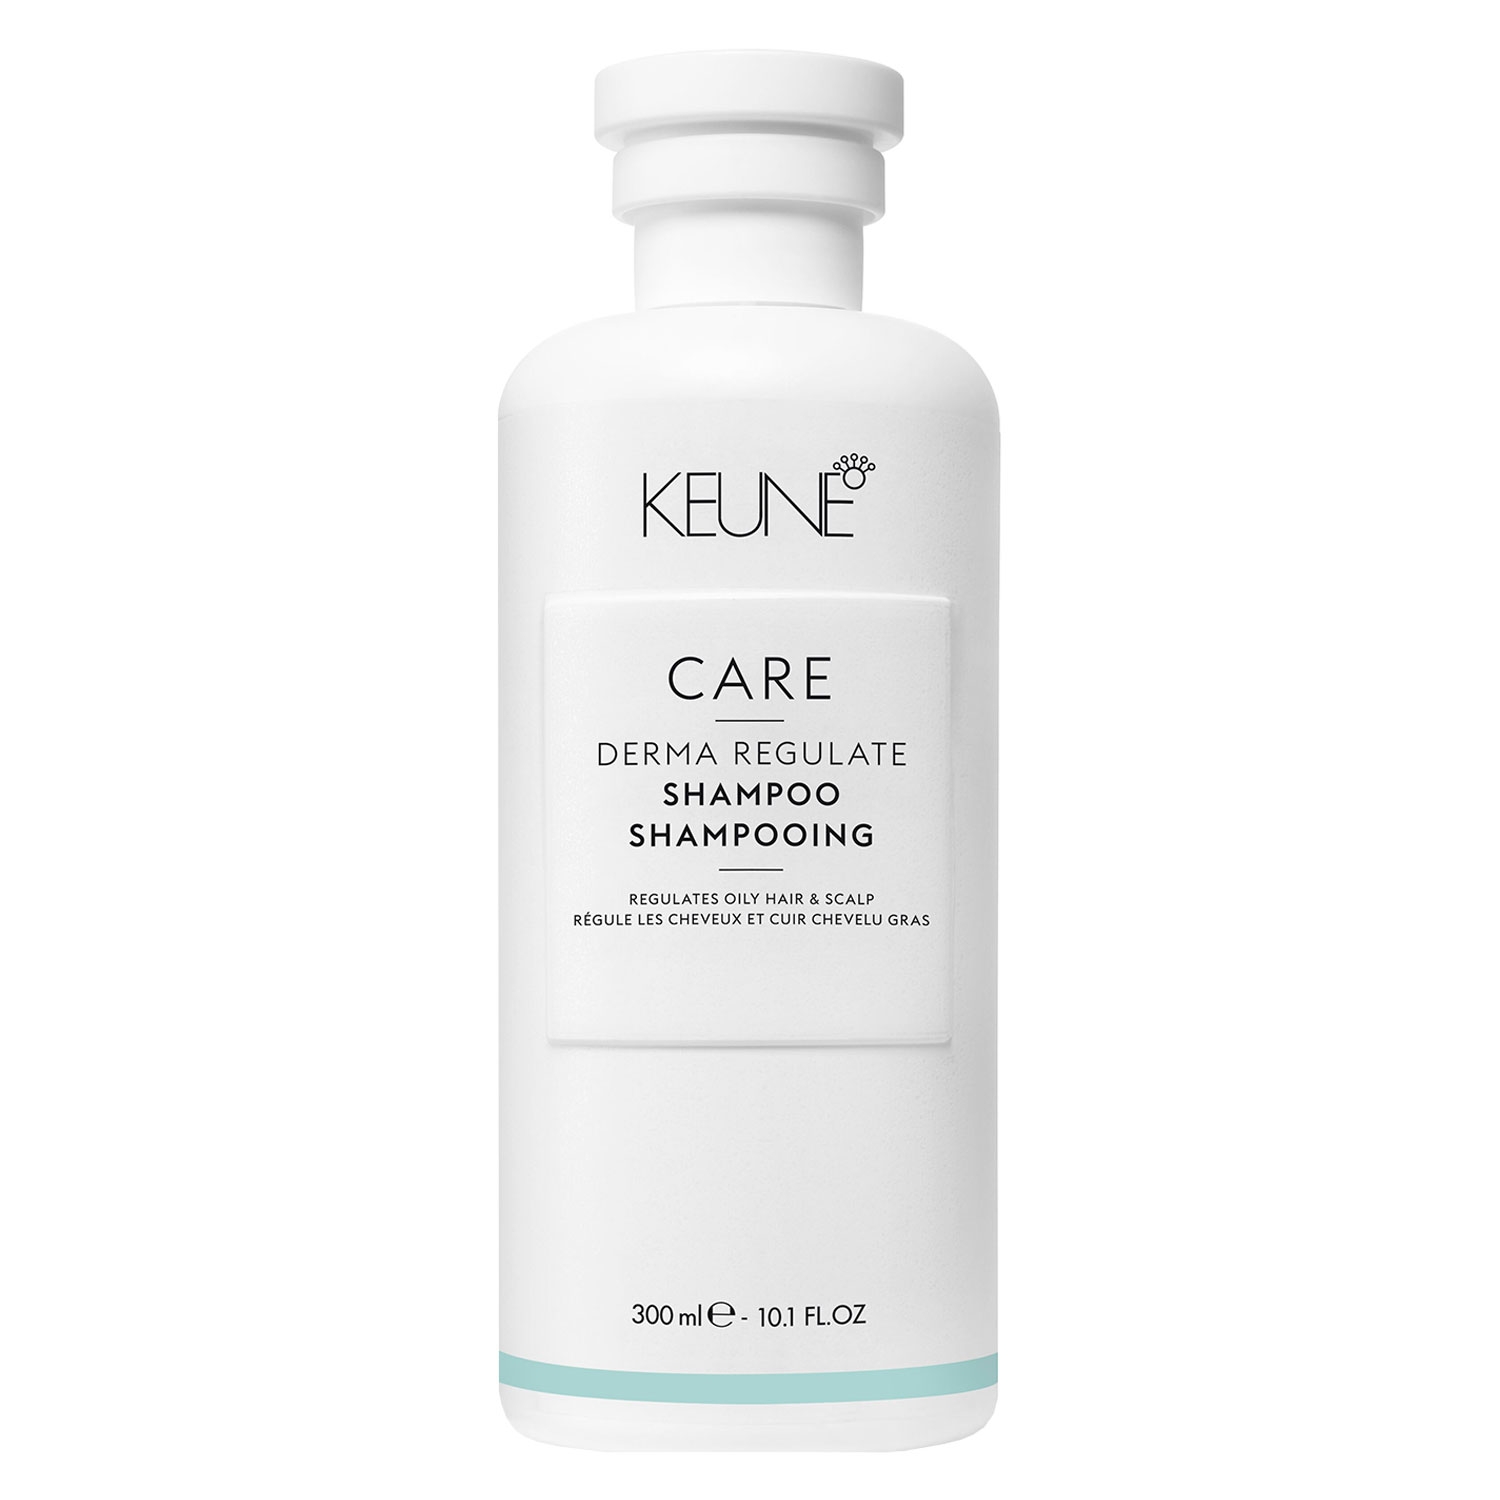 Produktbild von Keune Care - Derma Regulate Shampoo